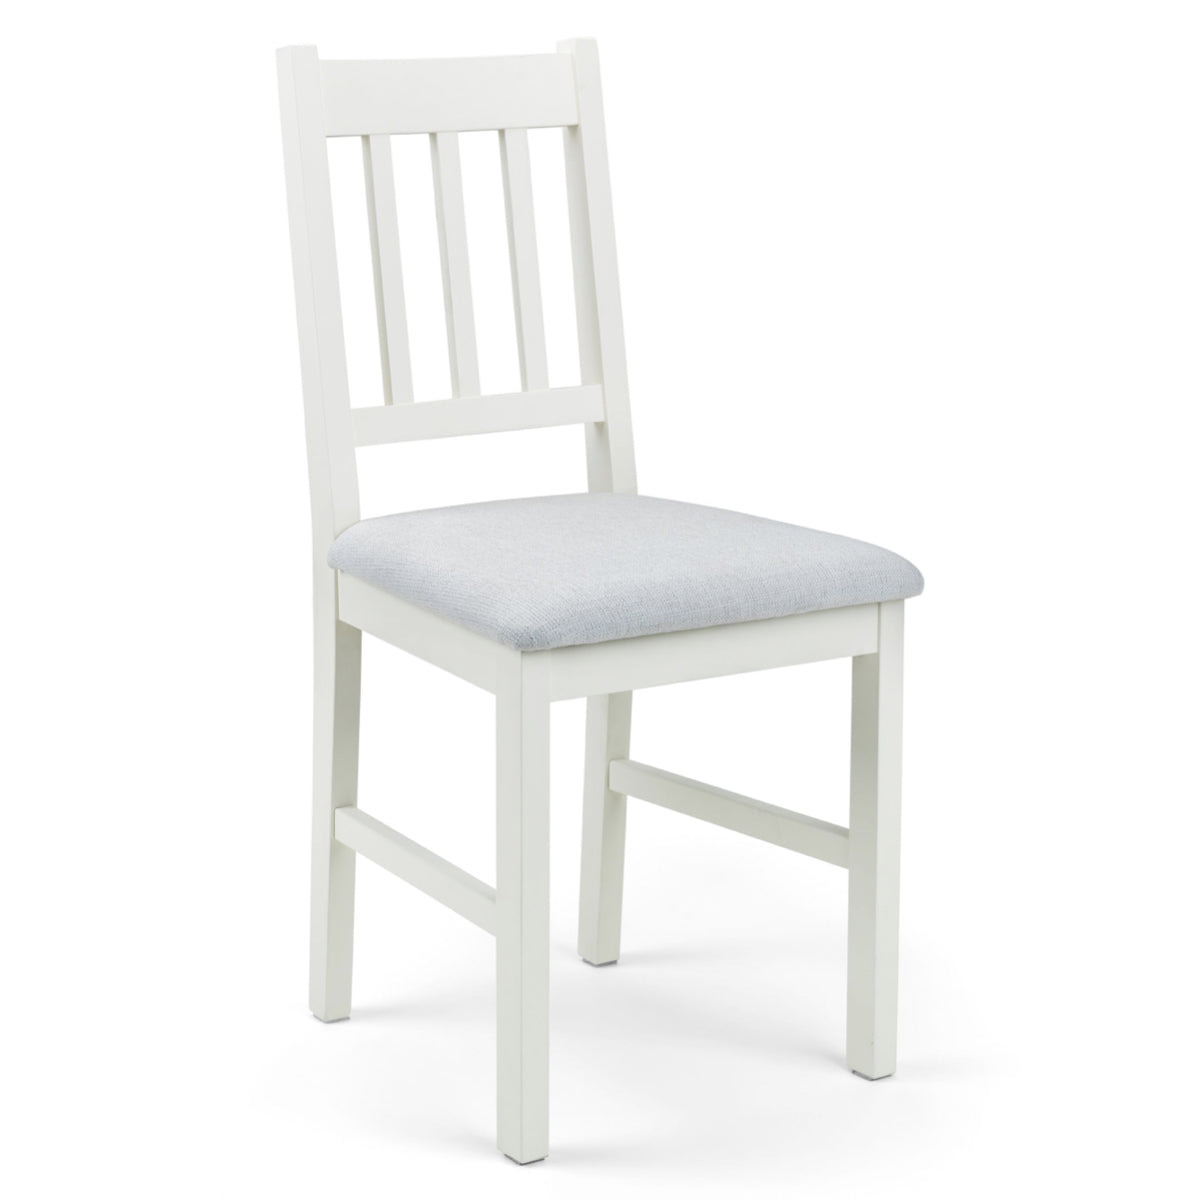 Julian Bowen, Coxmoor Dining Chair Assembled, White & Grey